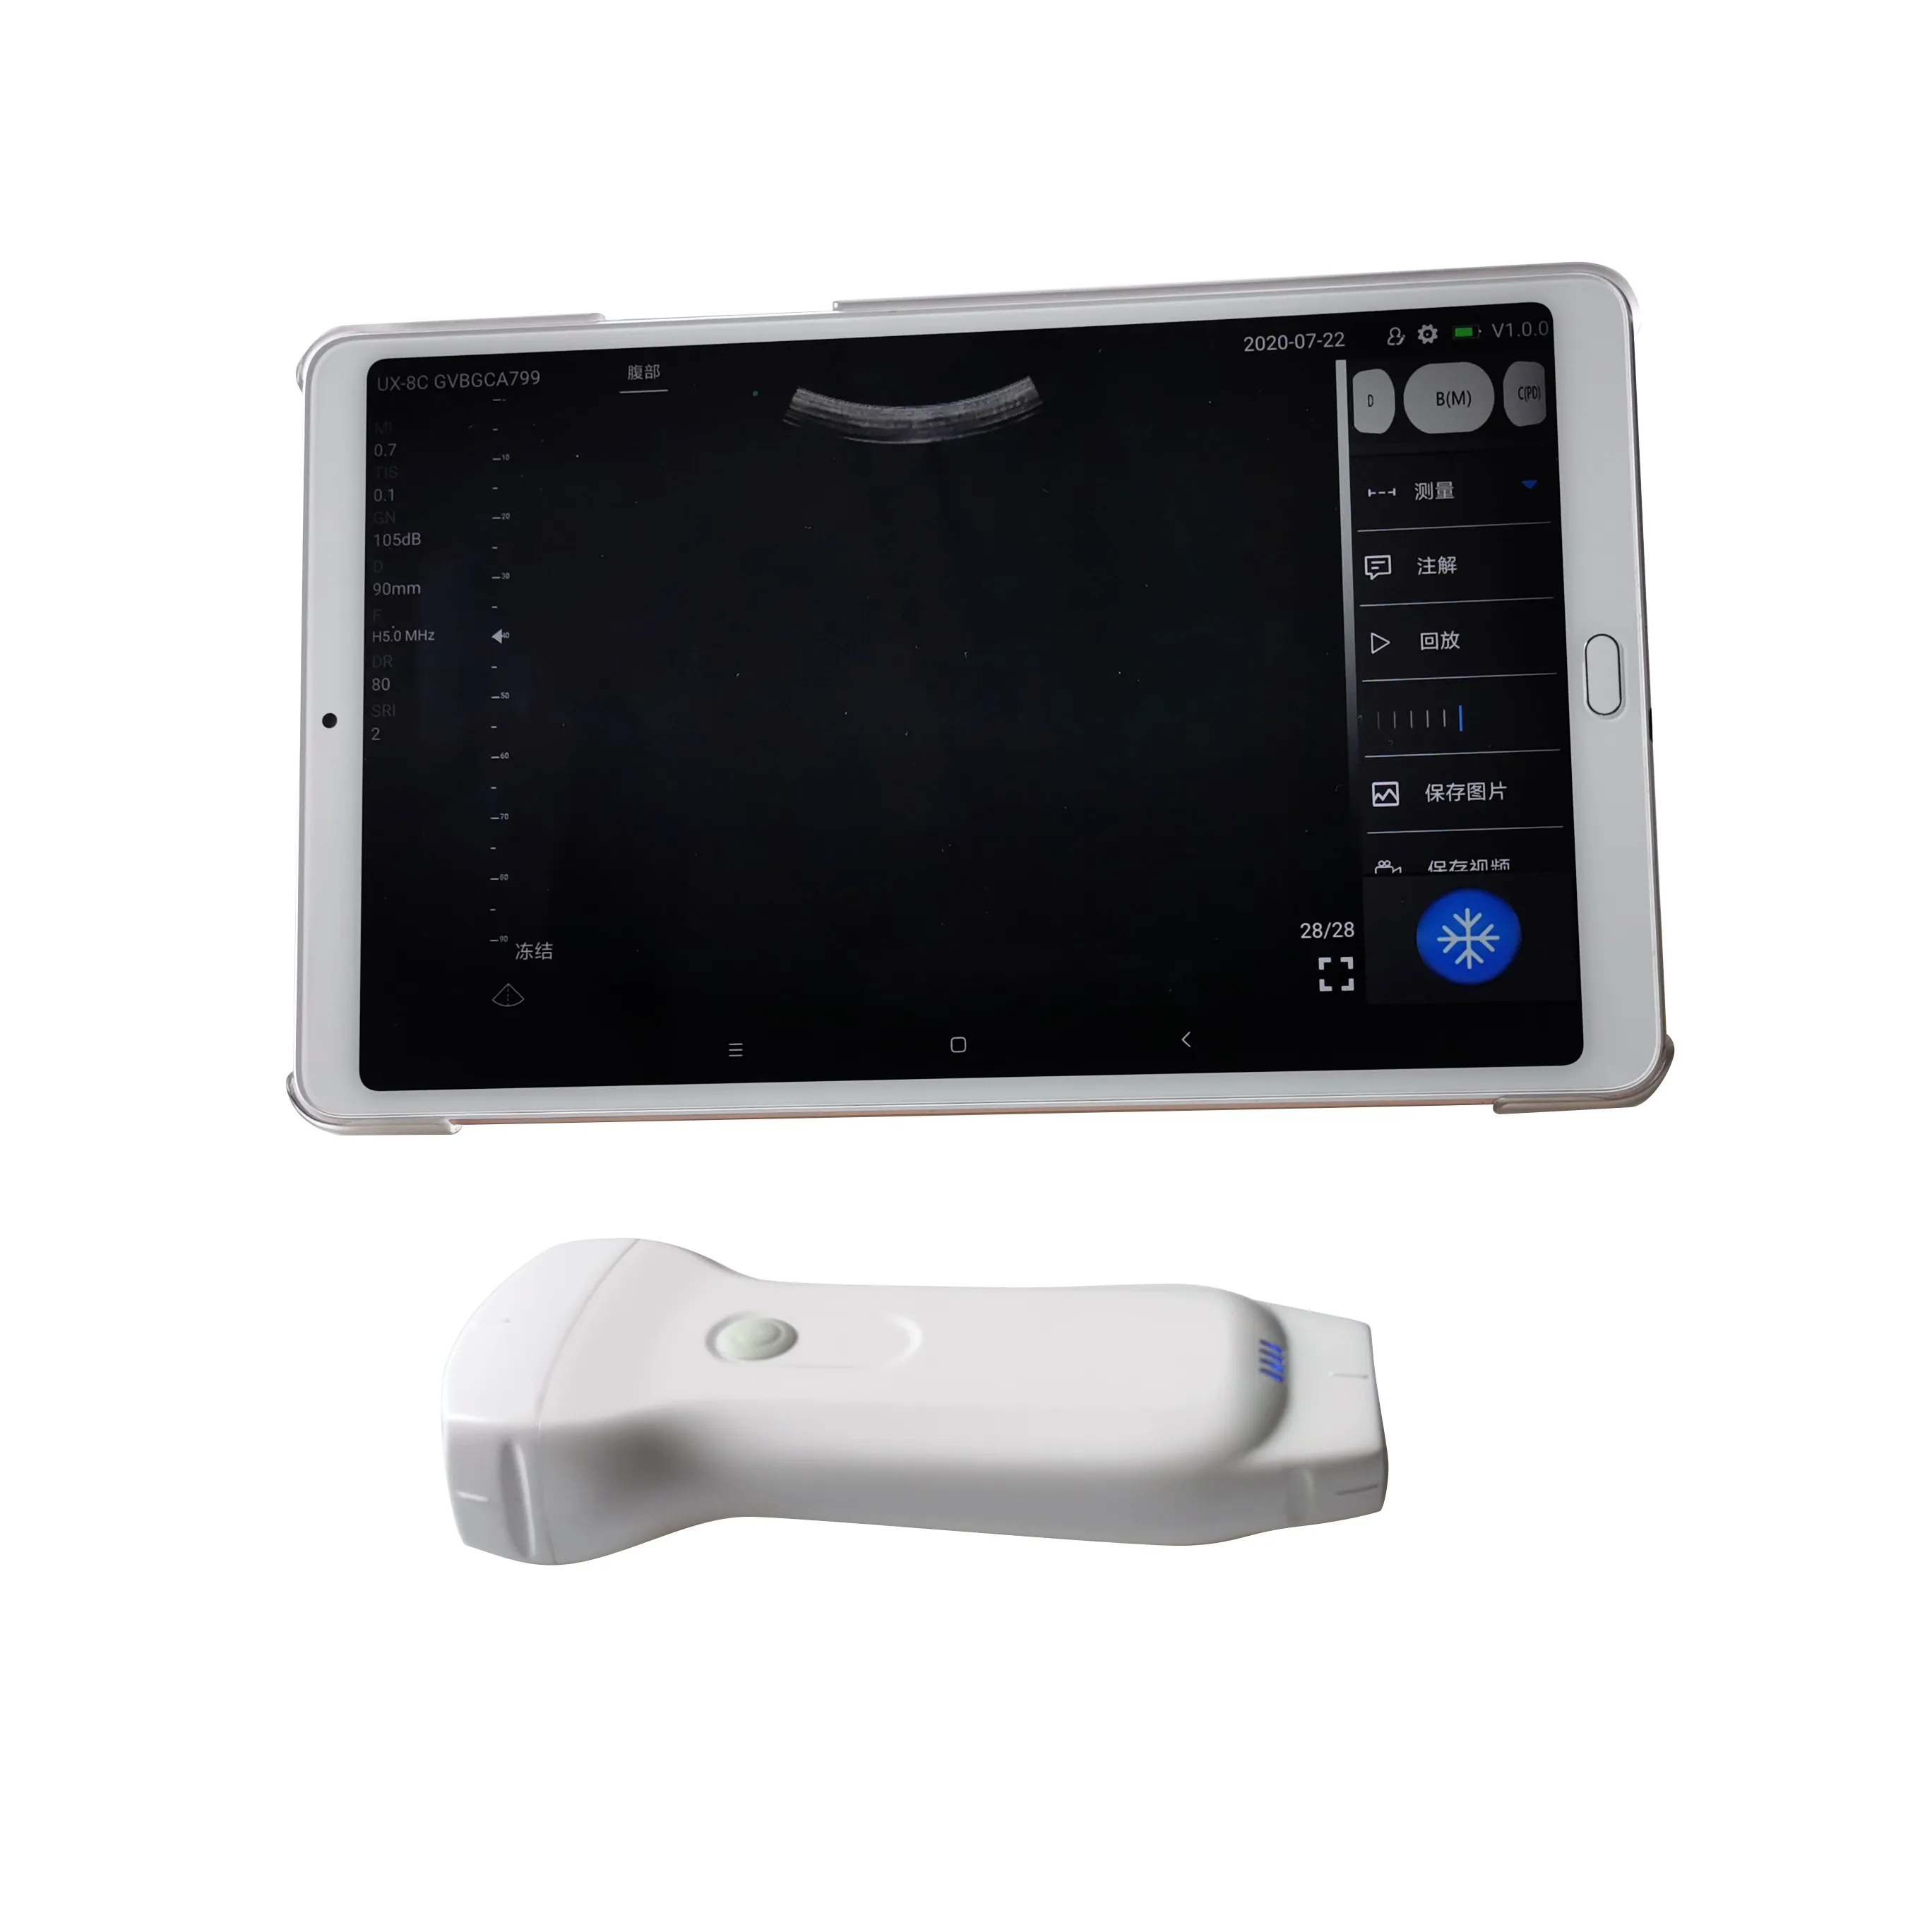 Sonda ad ultrasuoni usb wireless android/ios scanner ad ultrasuoni a doppia testa 3 in 1 ecografia tascabile convessa lineare phased array